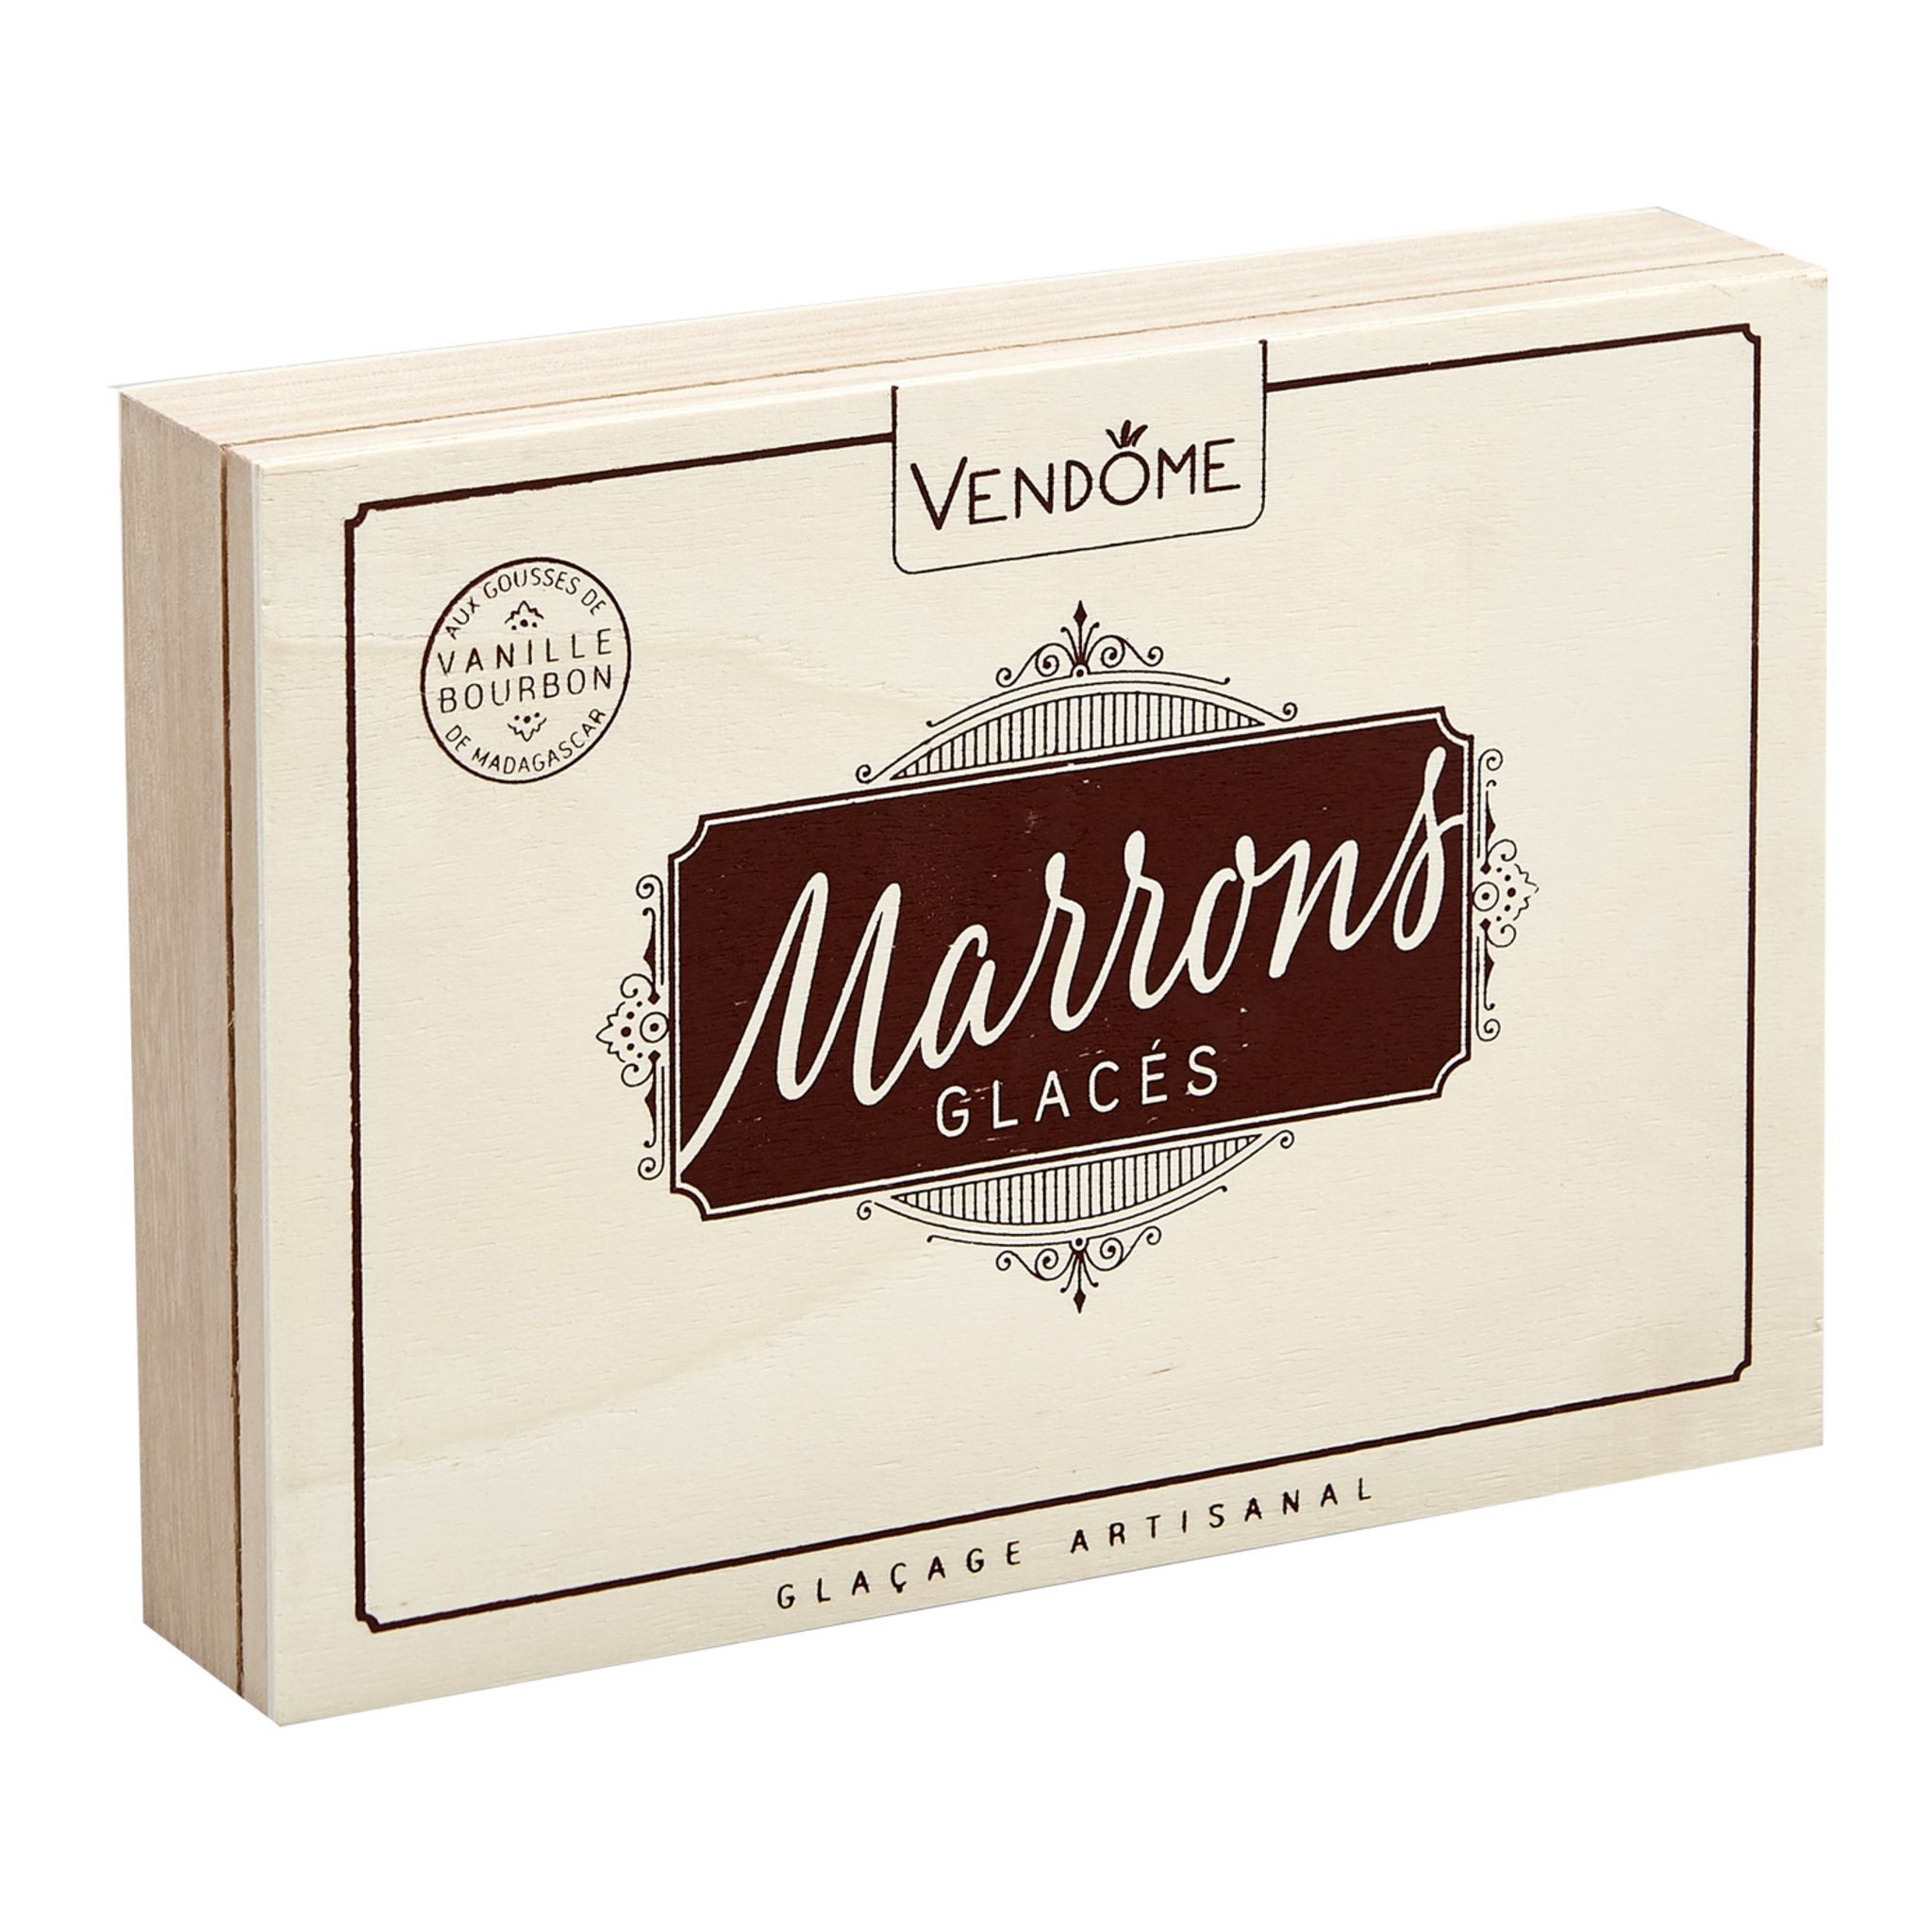 VENDOME Marrons entiers glacés à la vanille de Madagascar 9 pièces 160g pas  cher 